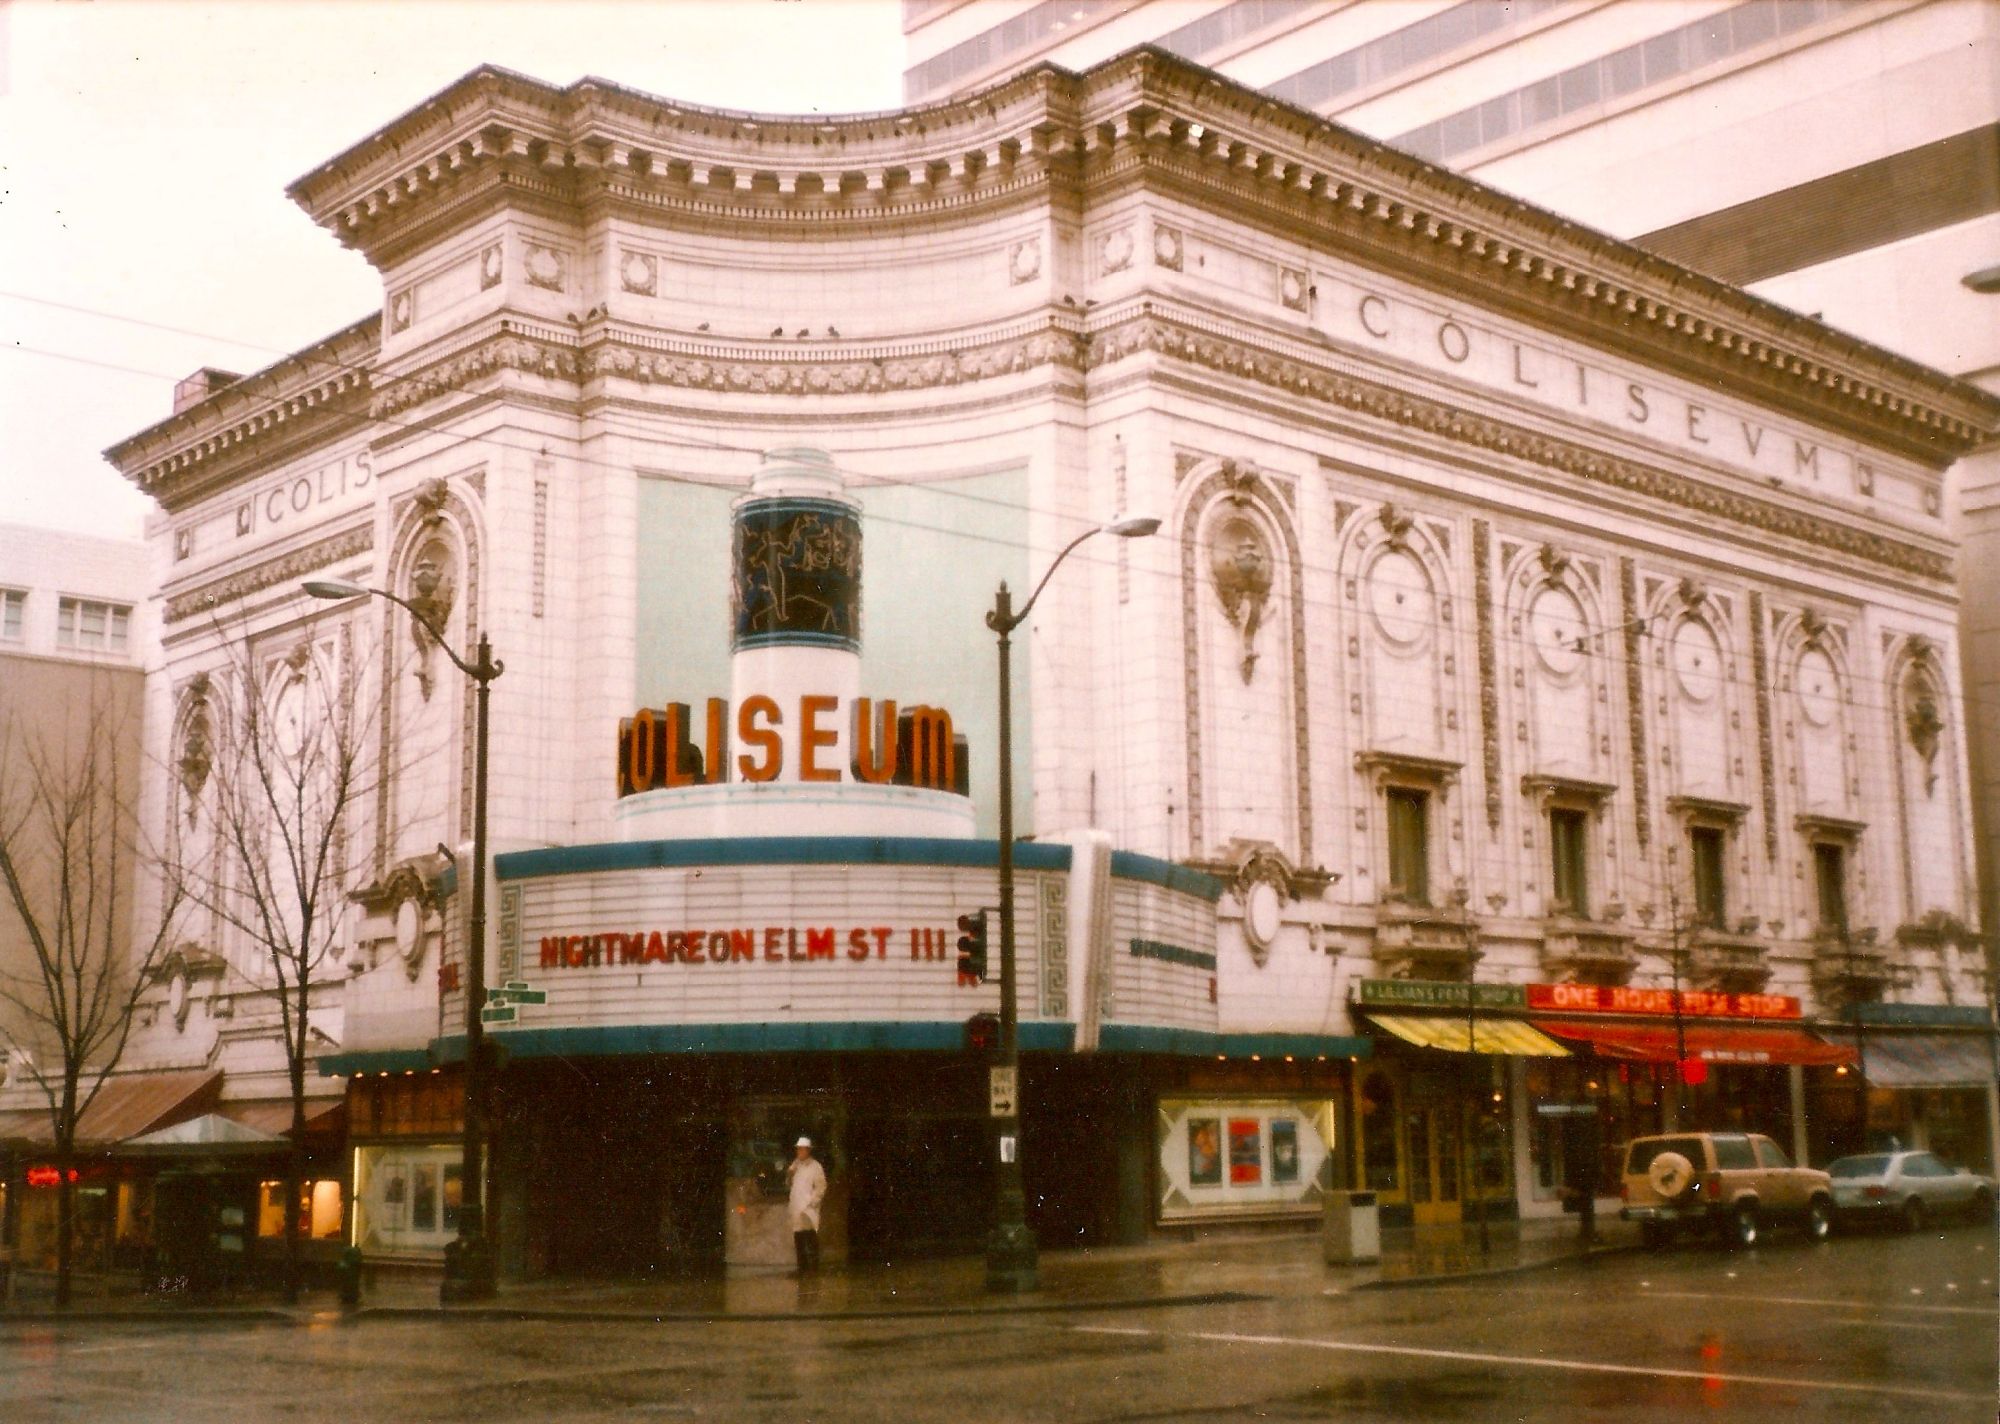 Coliseum theater